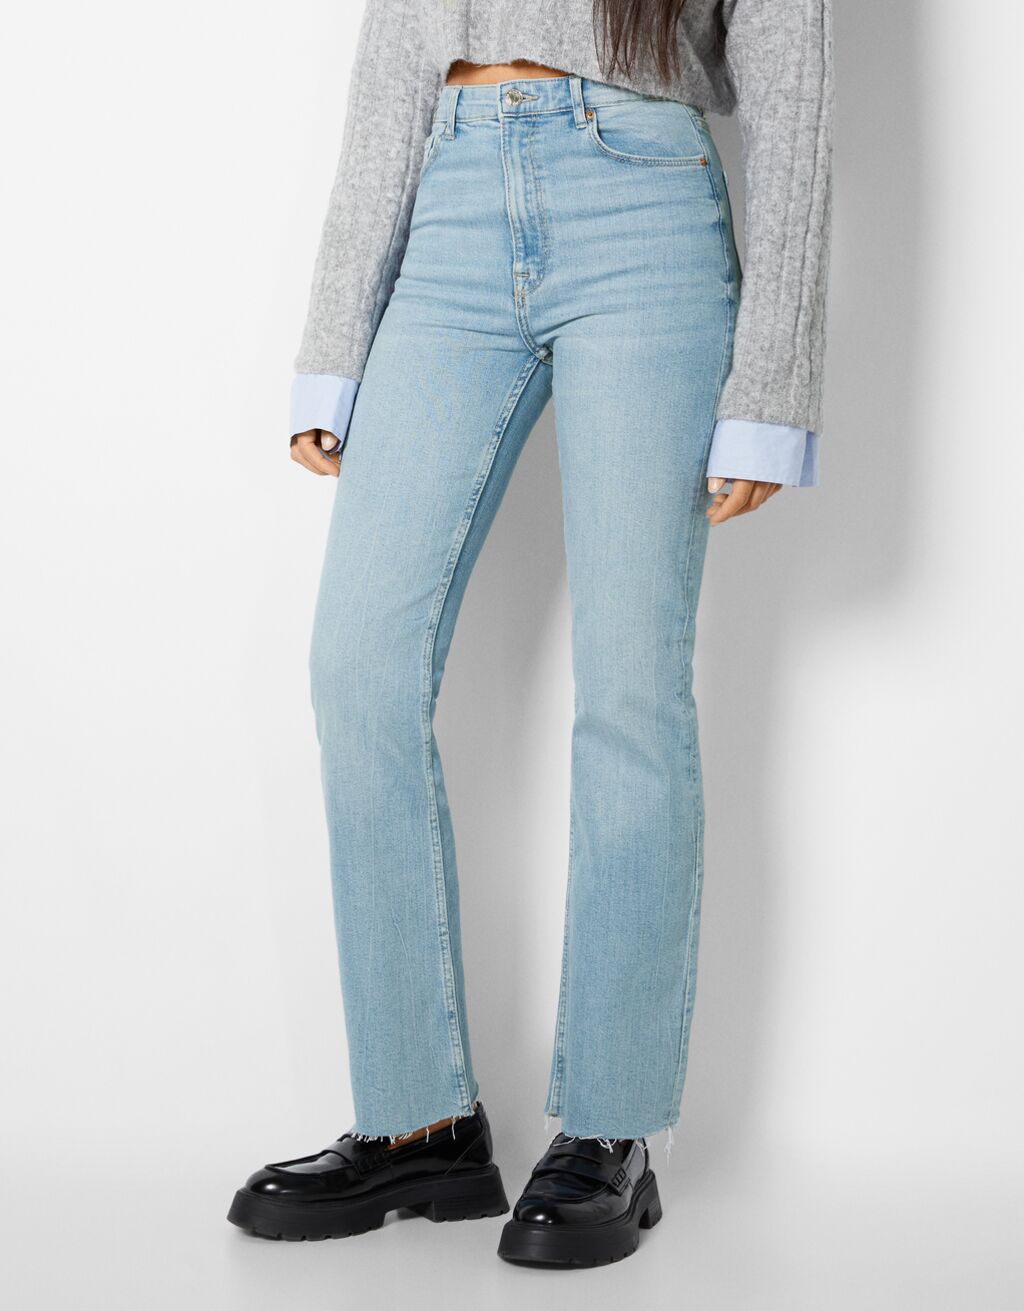 Comfort jeans in recht model met split in zijpand